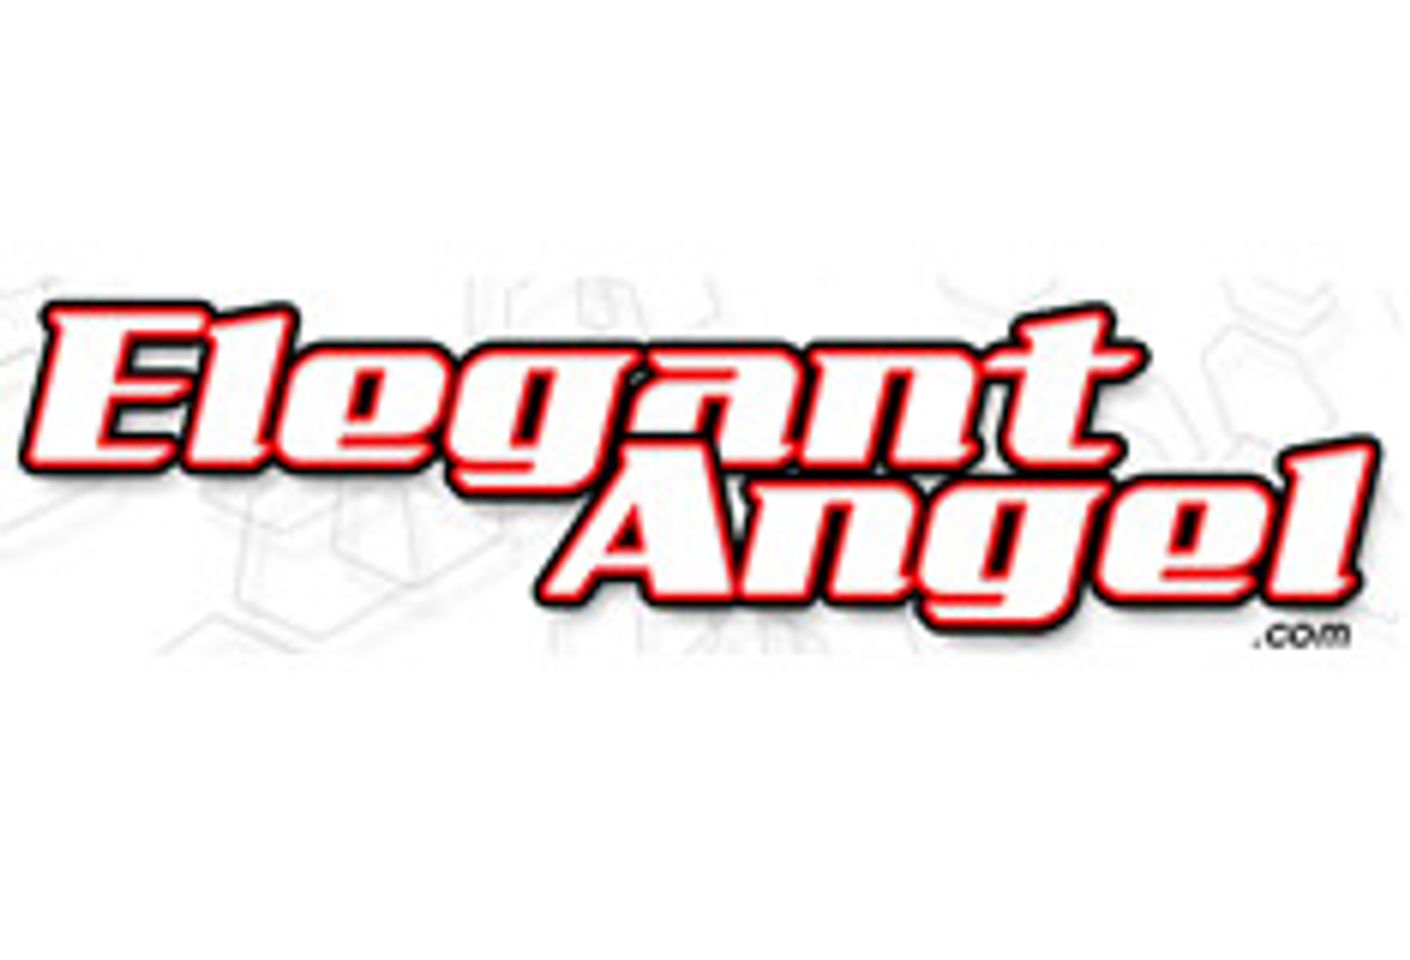 ElegantAngel.com Opens Voting for Favorite Star